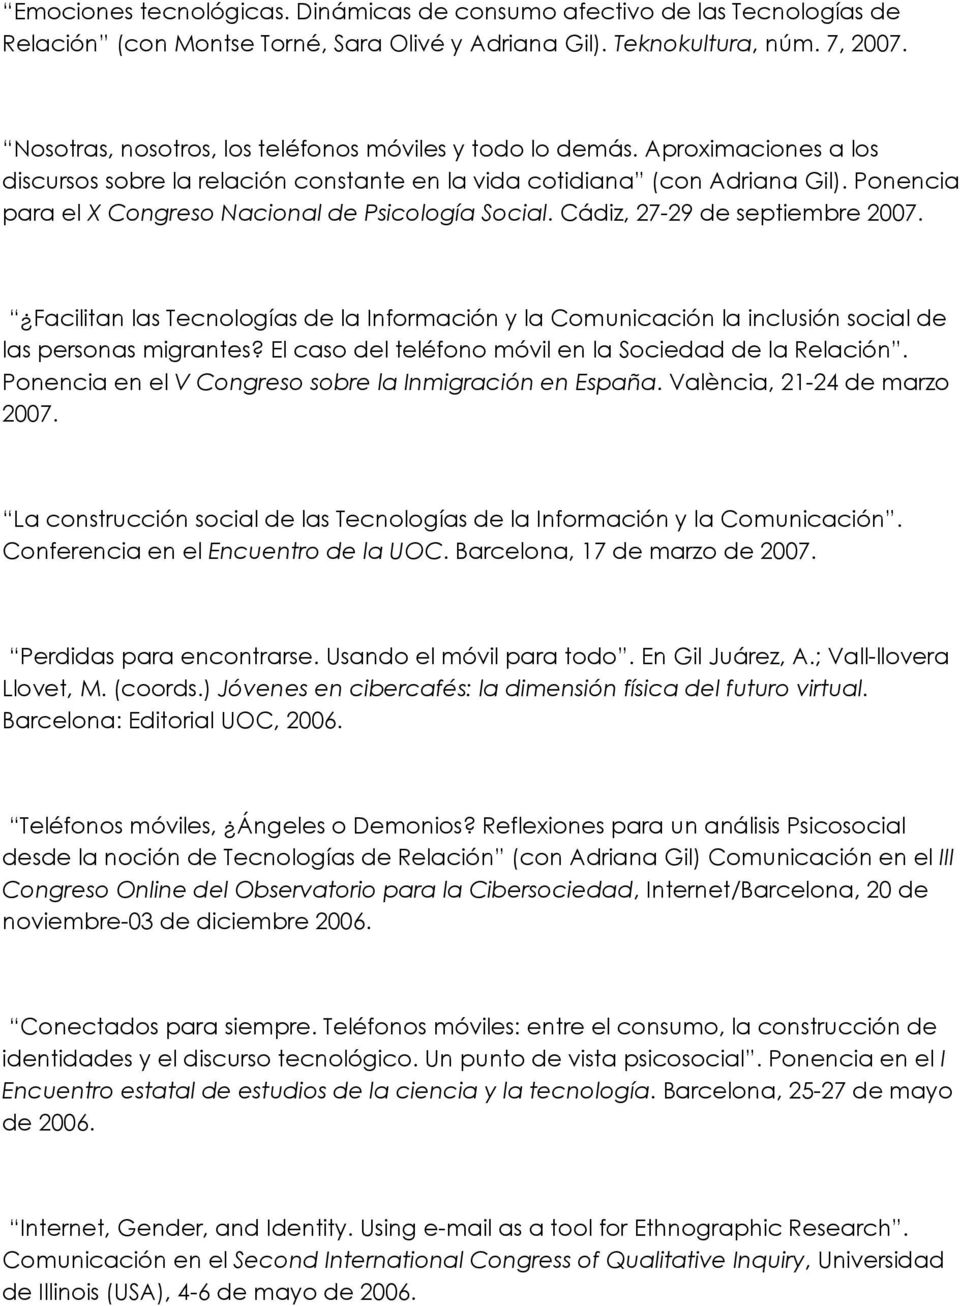 Ponencia para el X Congreso Nacional de Psicología Social. Cádiz, 27-29 de septiembre 2007. Facilitan las Tecnologías de la Información y la Comunicación la inclusión social de las personas migrantes?